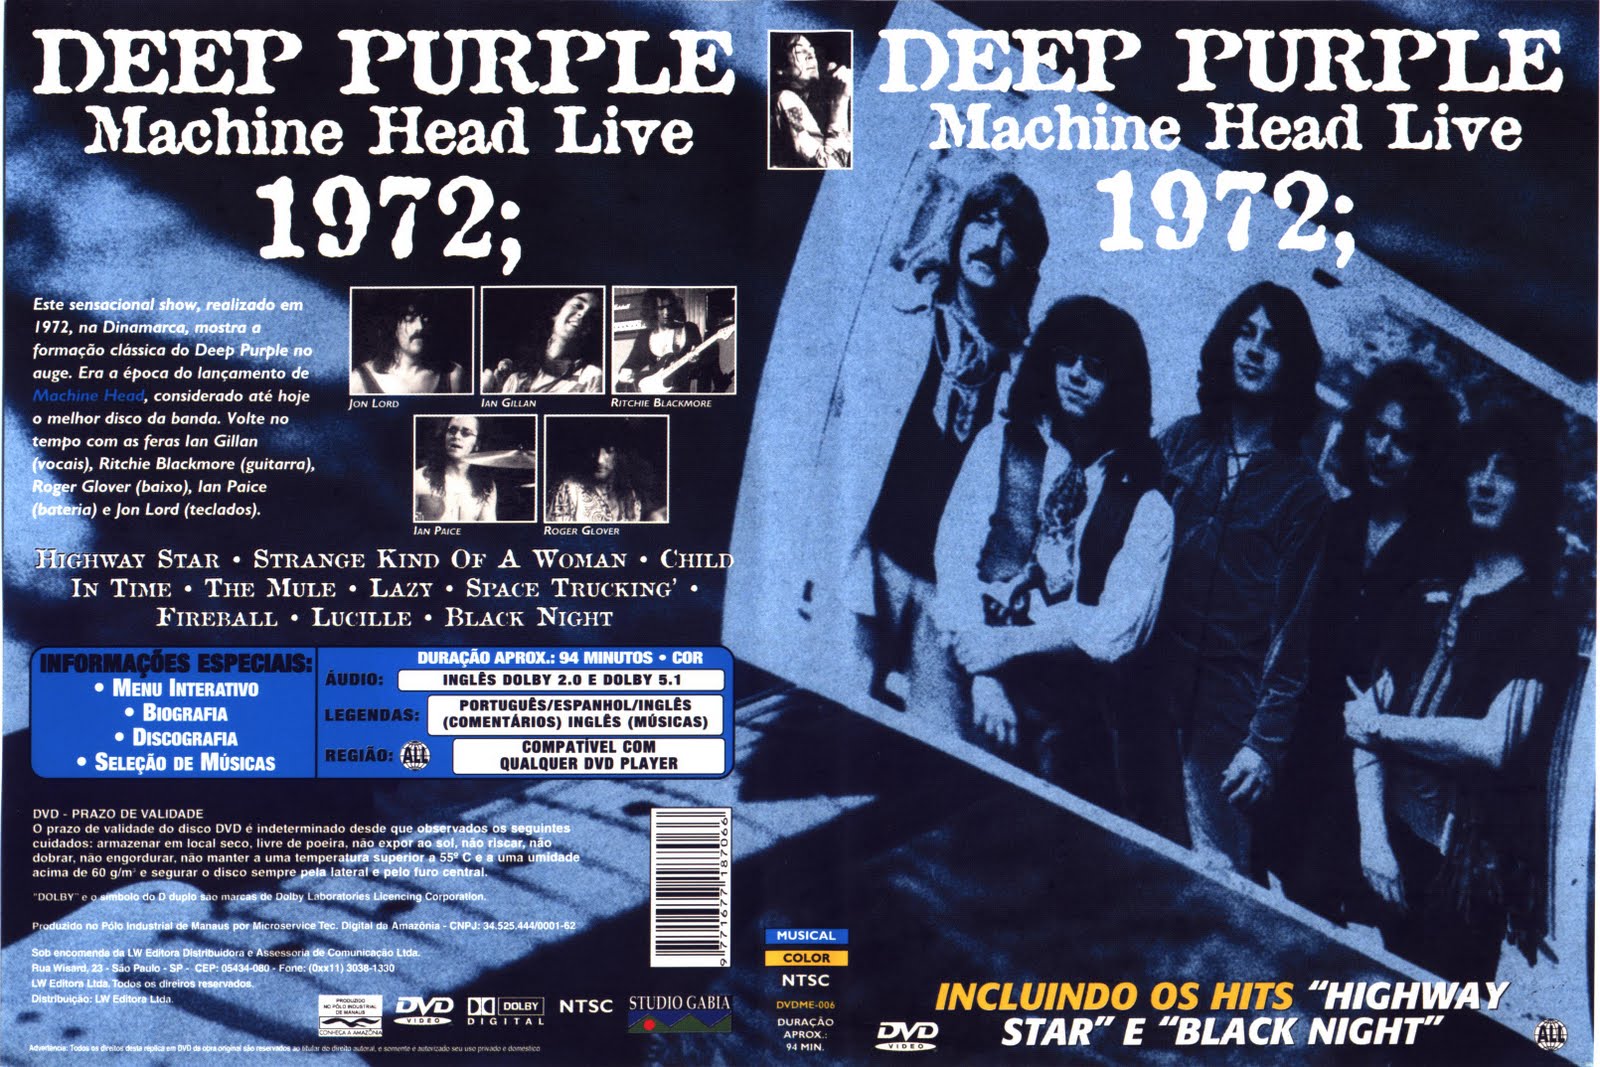 Дип перпл клипы. Группа Deep Purple 1972. Deep Purple 1972 Live. Концерт дип перпл 1972. Deep Purple обложка DVD.